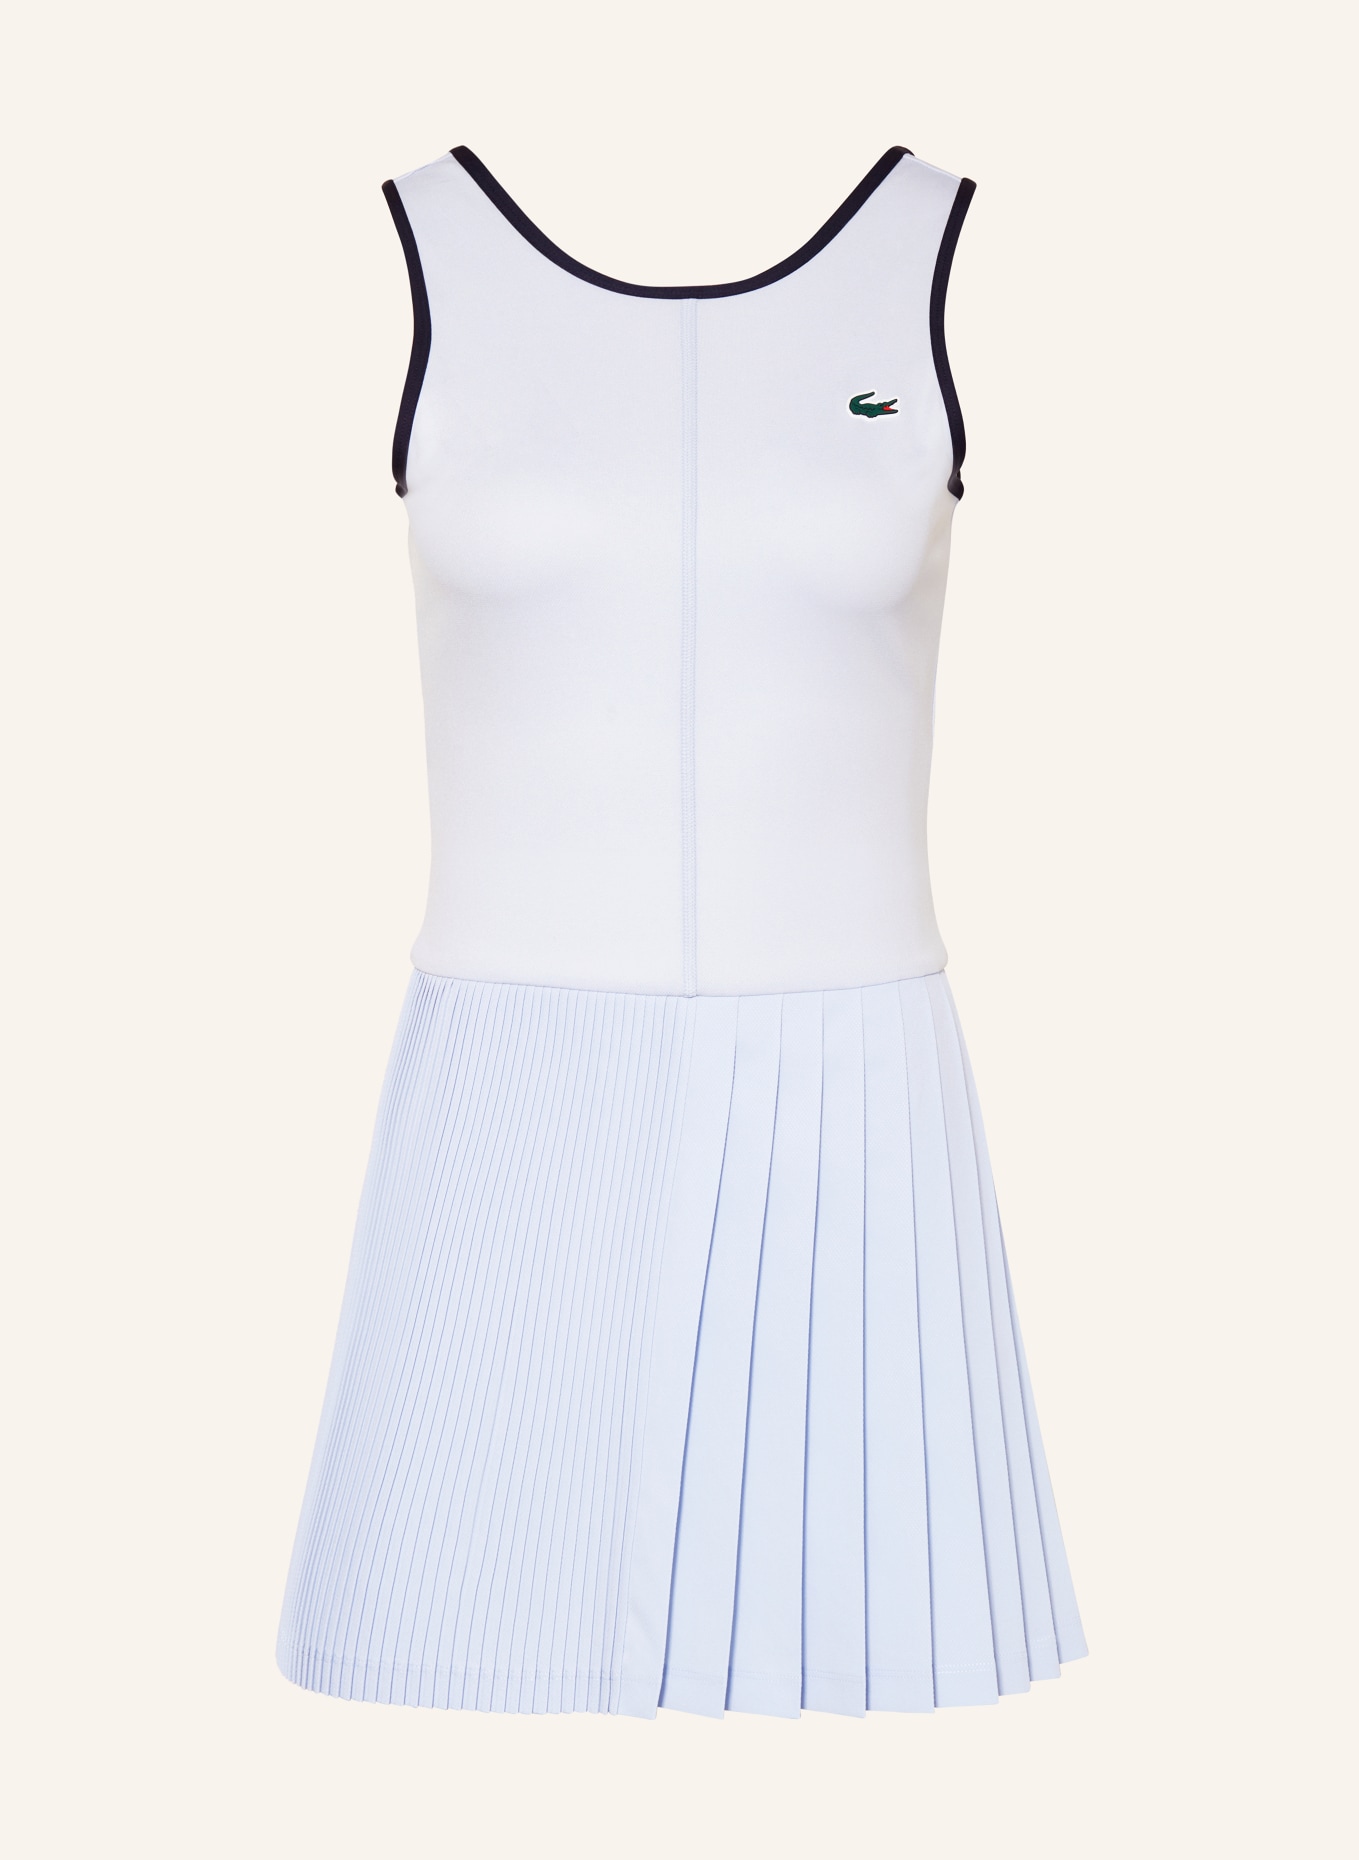 LACOSTE Tenniskleid, Farbe: HELLBLAU/ DUNKELBLAU (Bild 1)